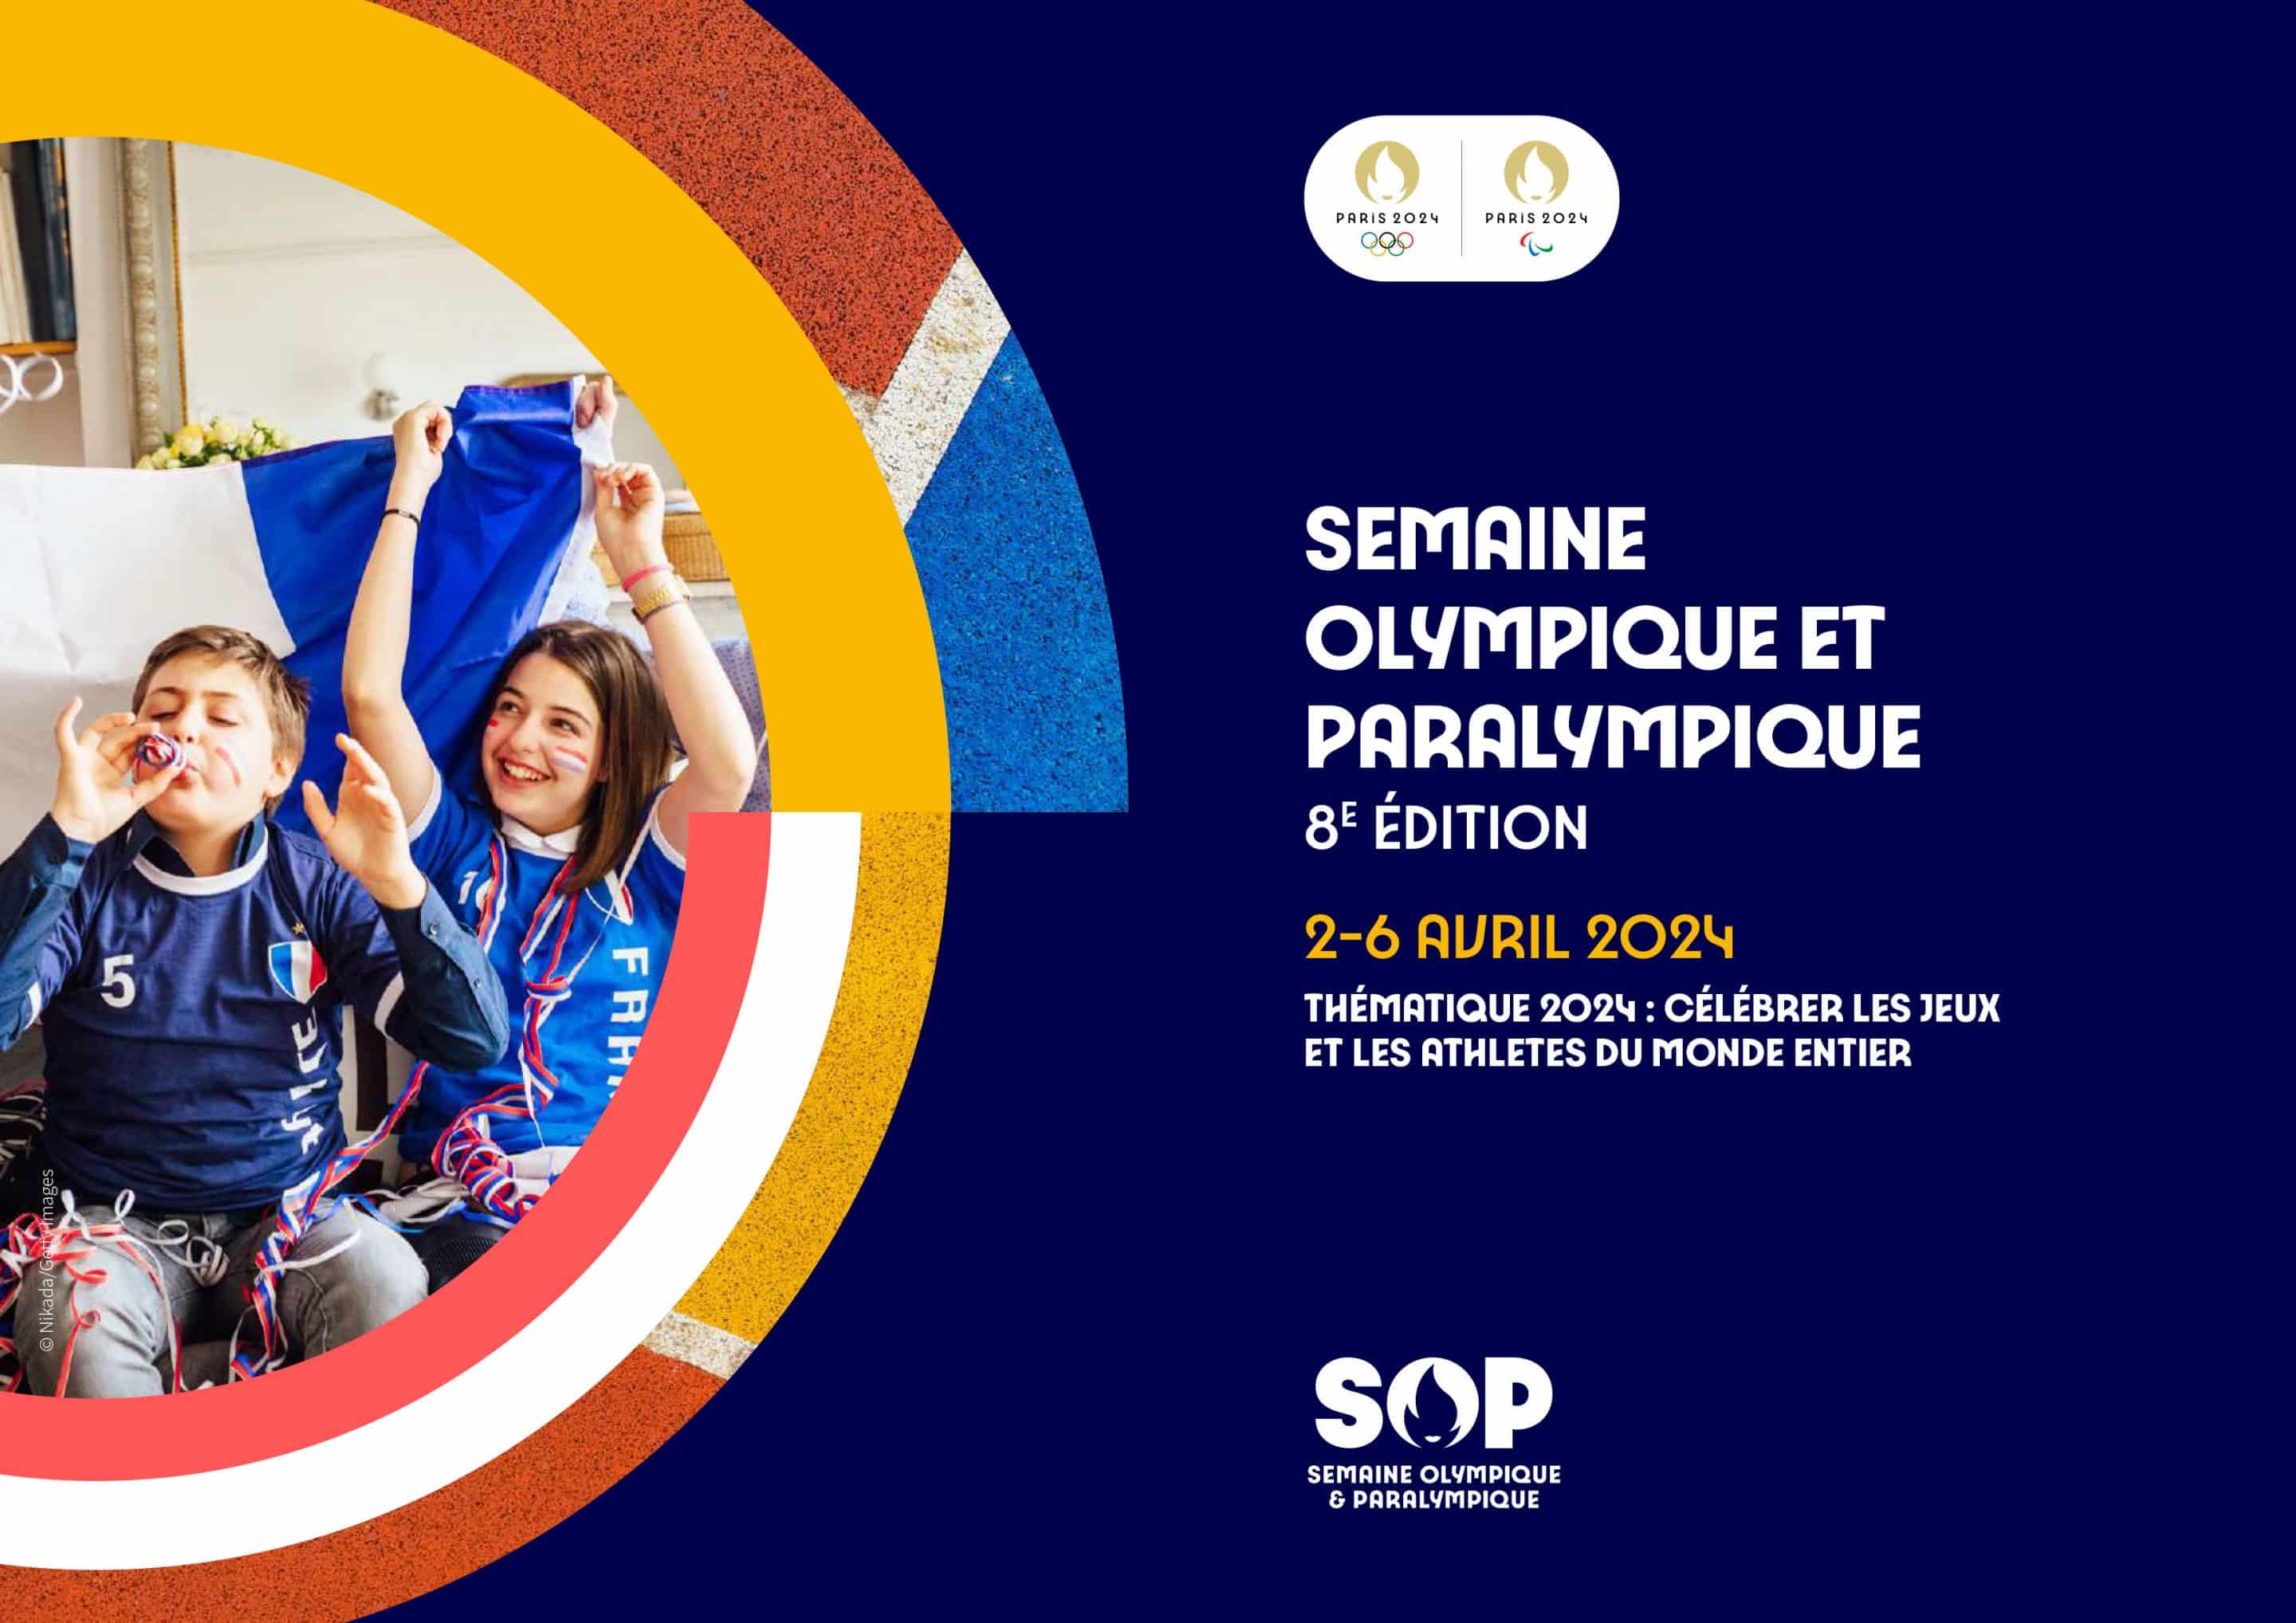 Semaine Olympique et Paralympique (SOP) 2024 déposez votre projet